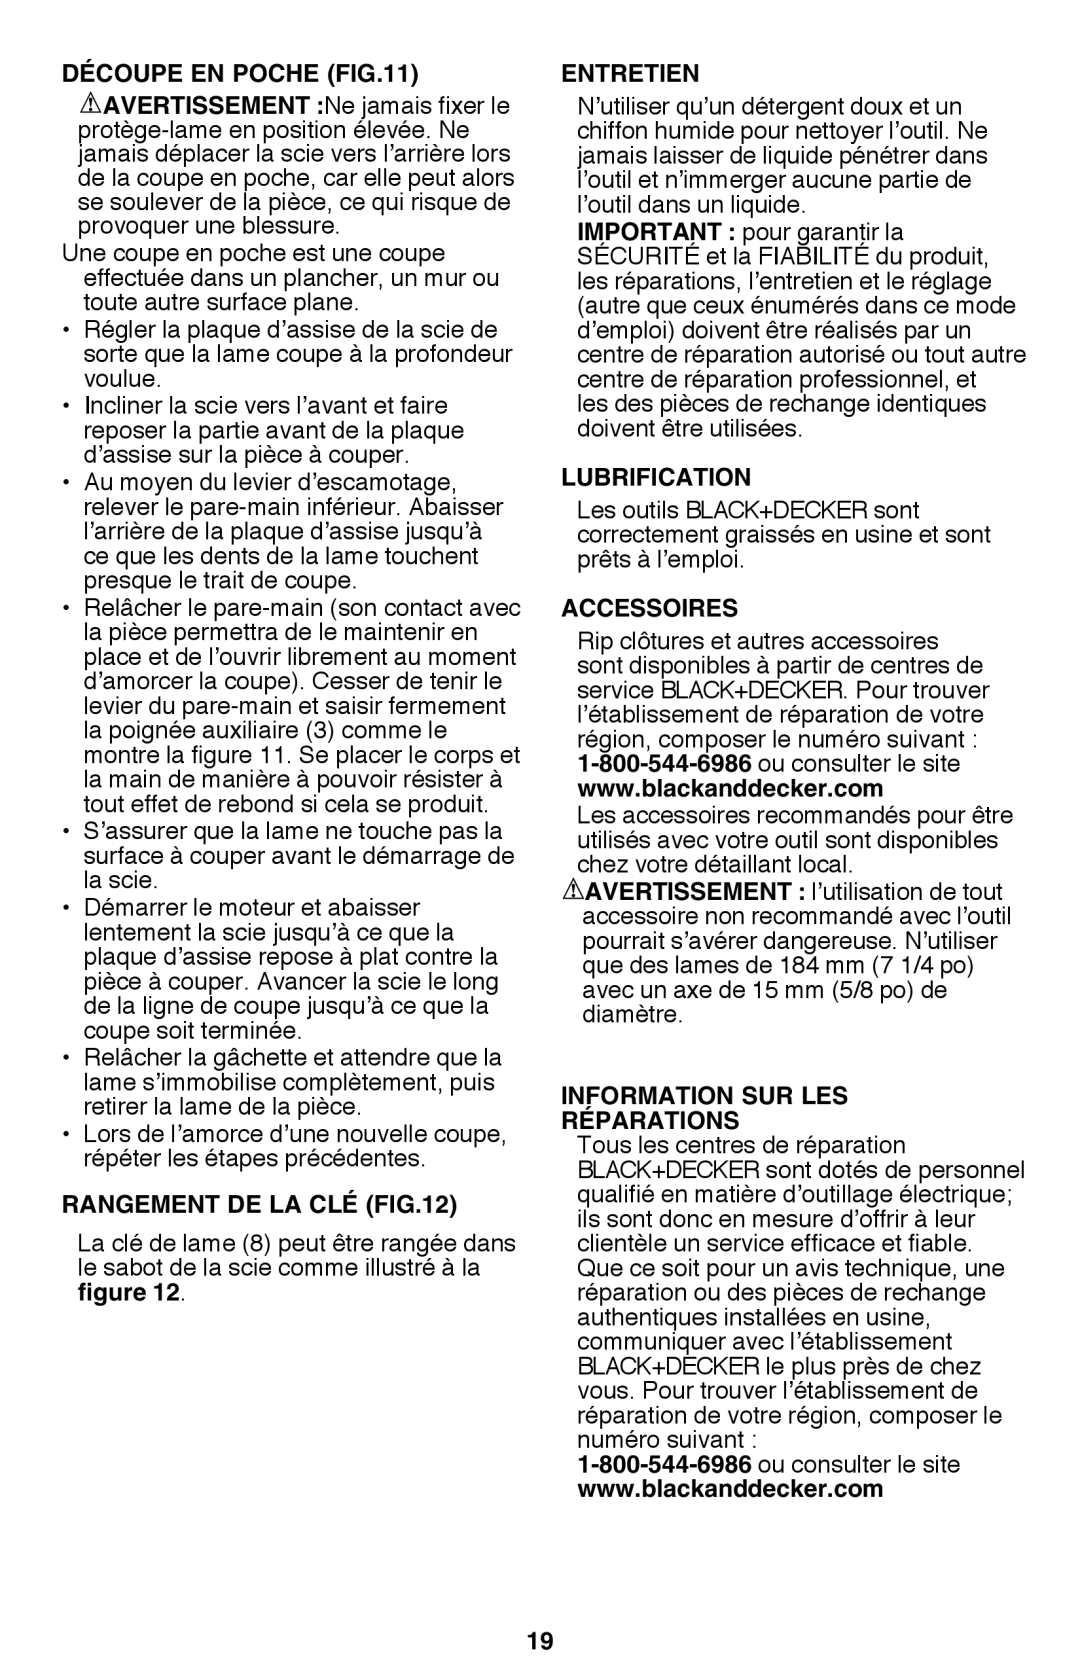 Black & Decker CS1015 instruction manual Découpe En Poche, Rangement de la clé, Entretien, Lubrification, Accessoires 